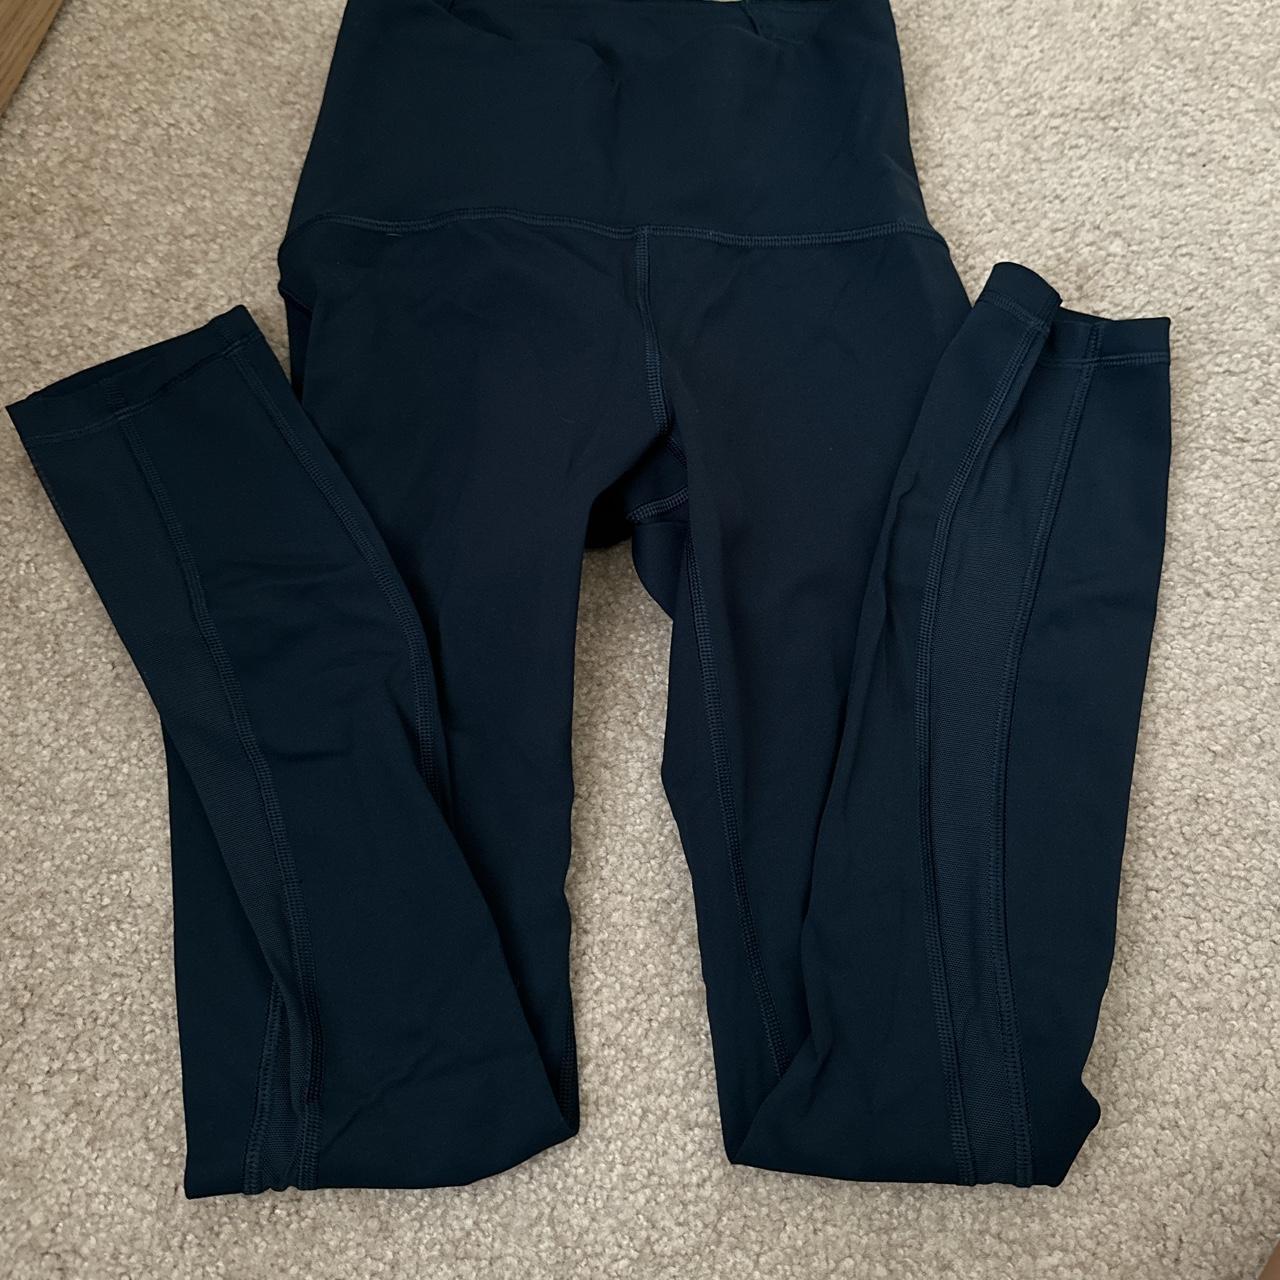 Lululemon navy blue full length navy leggings